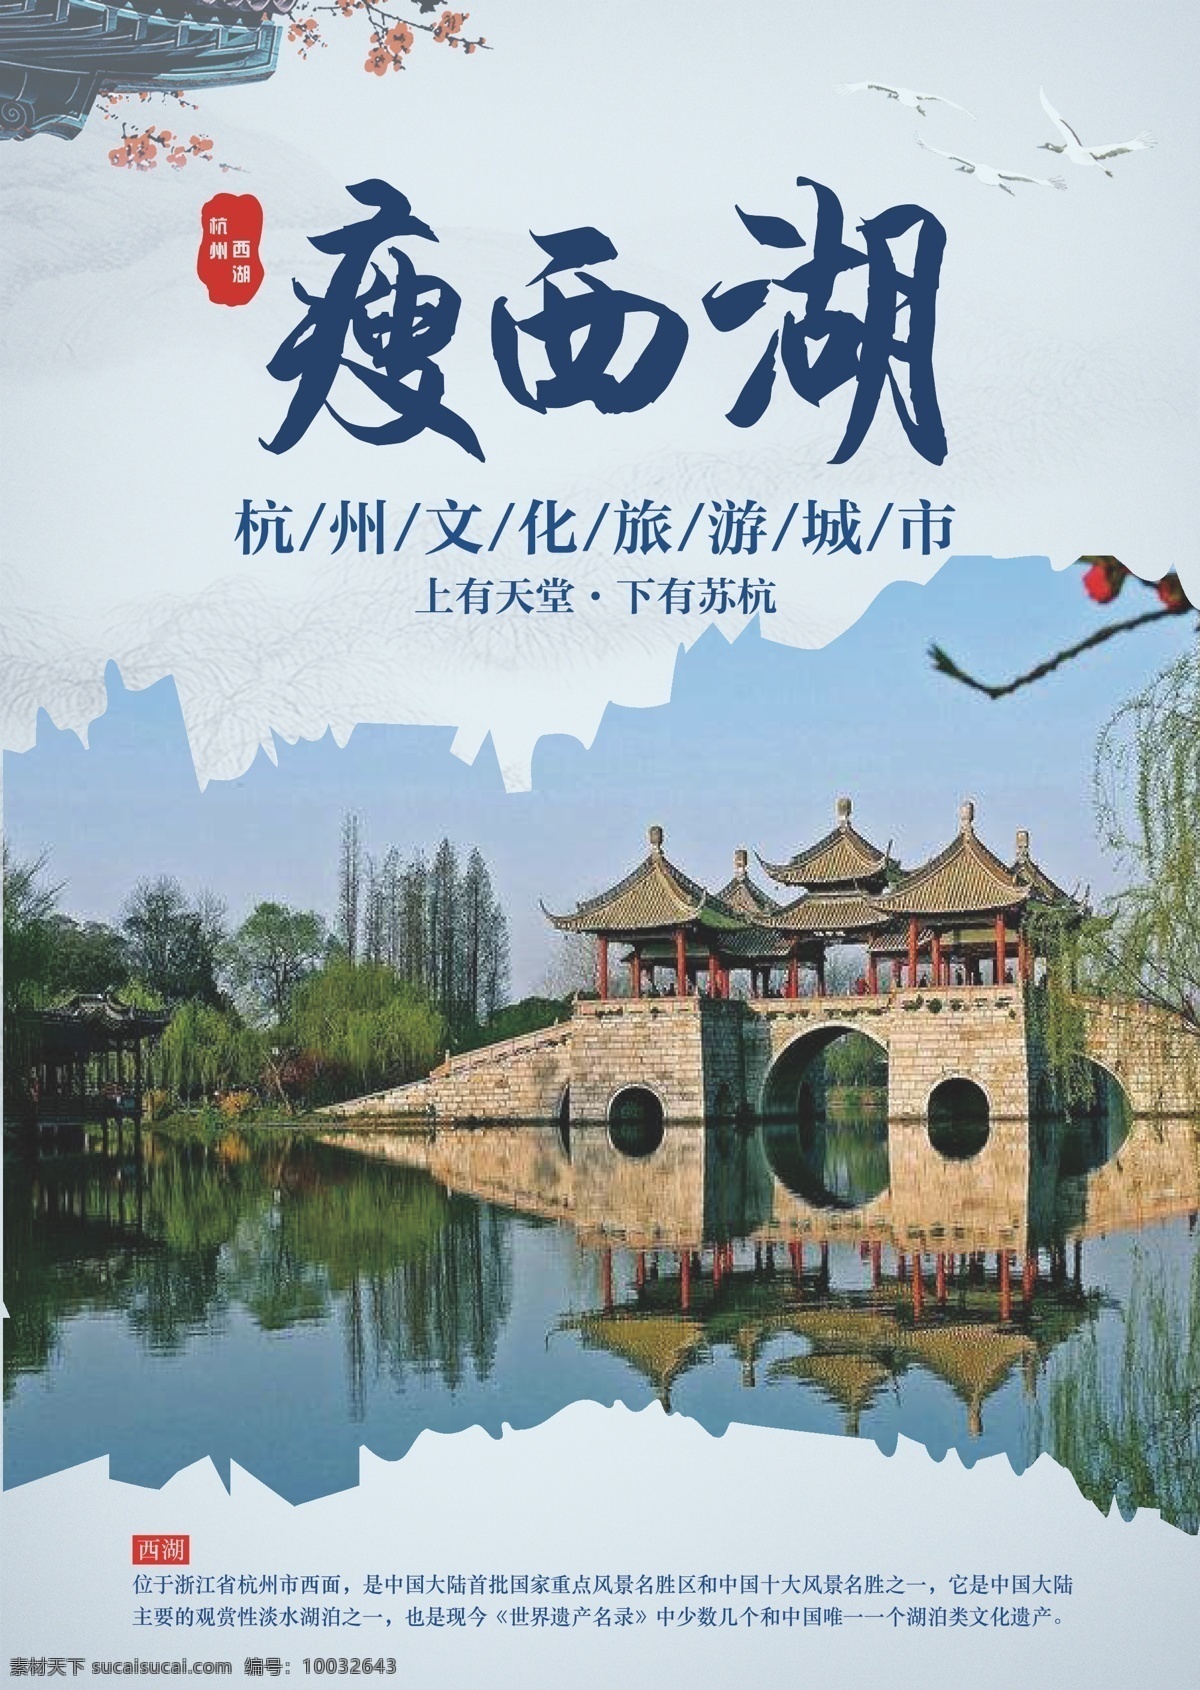 旅游海报 瘦西湖 中国风 旅游景点 杭州文化 淡水湖泊